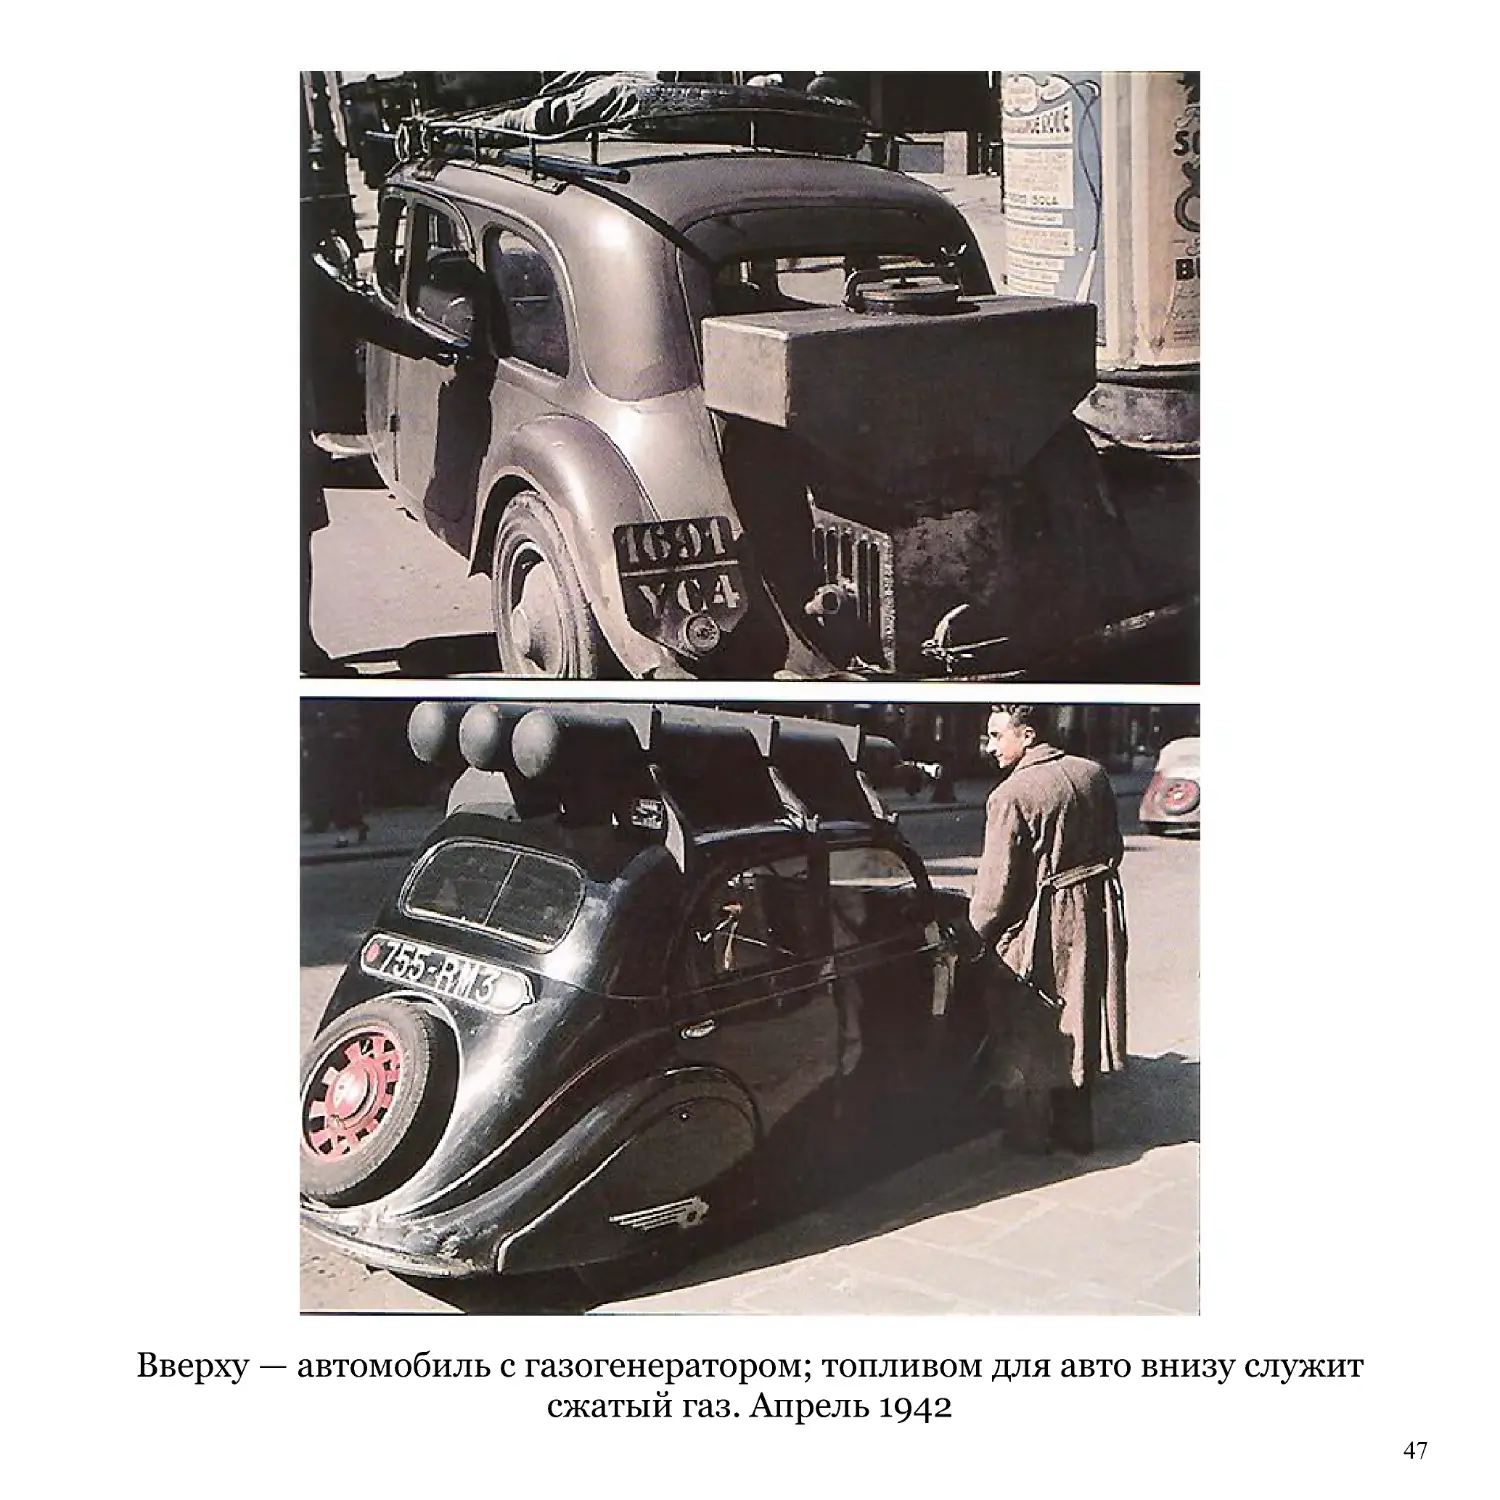 Вверху — автомобиль с газогенератором; топливом для авто внизу служит сжатый газ. Апрель 1942